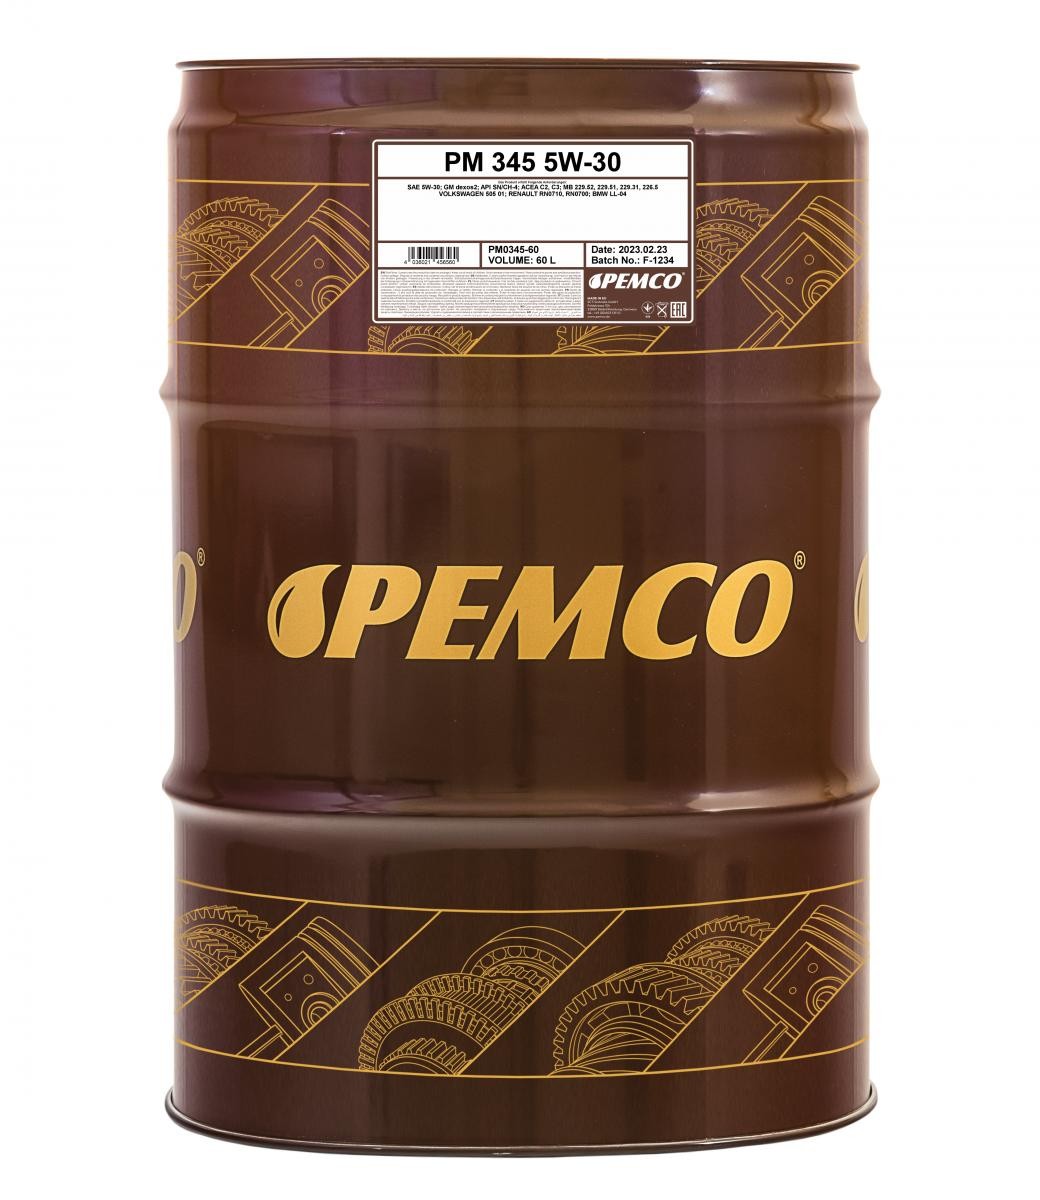 PM0345-60 PEMCO iDRIVE 300, iDRIVE 345 5W-30, 60l, Synthetiköl Motoröl PM0345-60 günstig kaufen